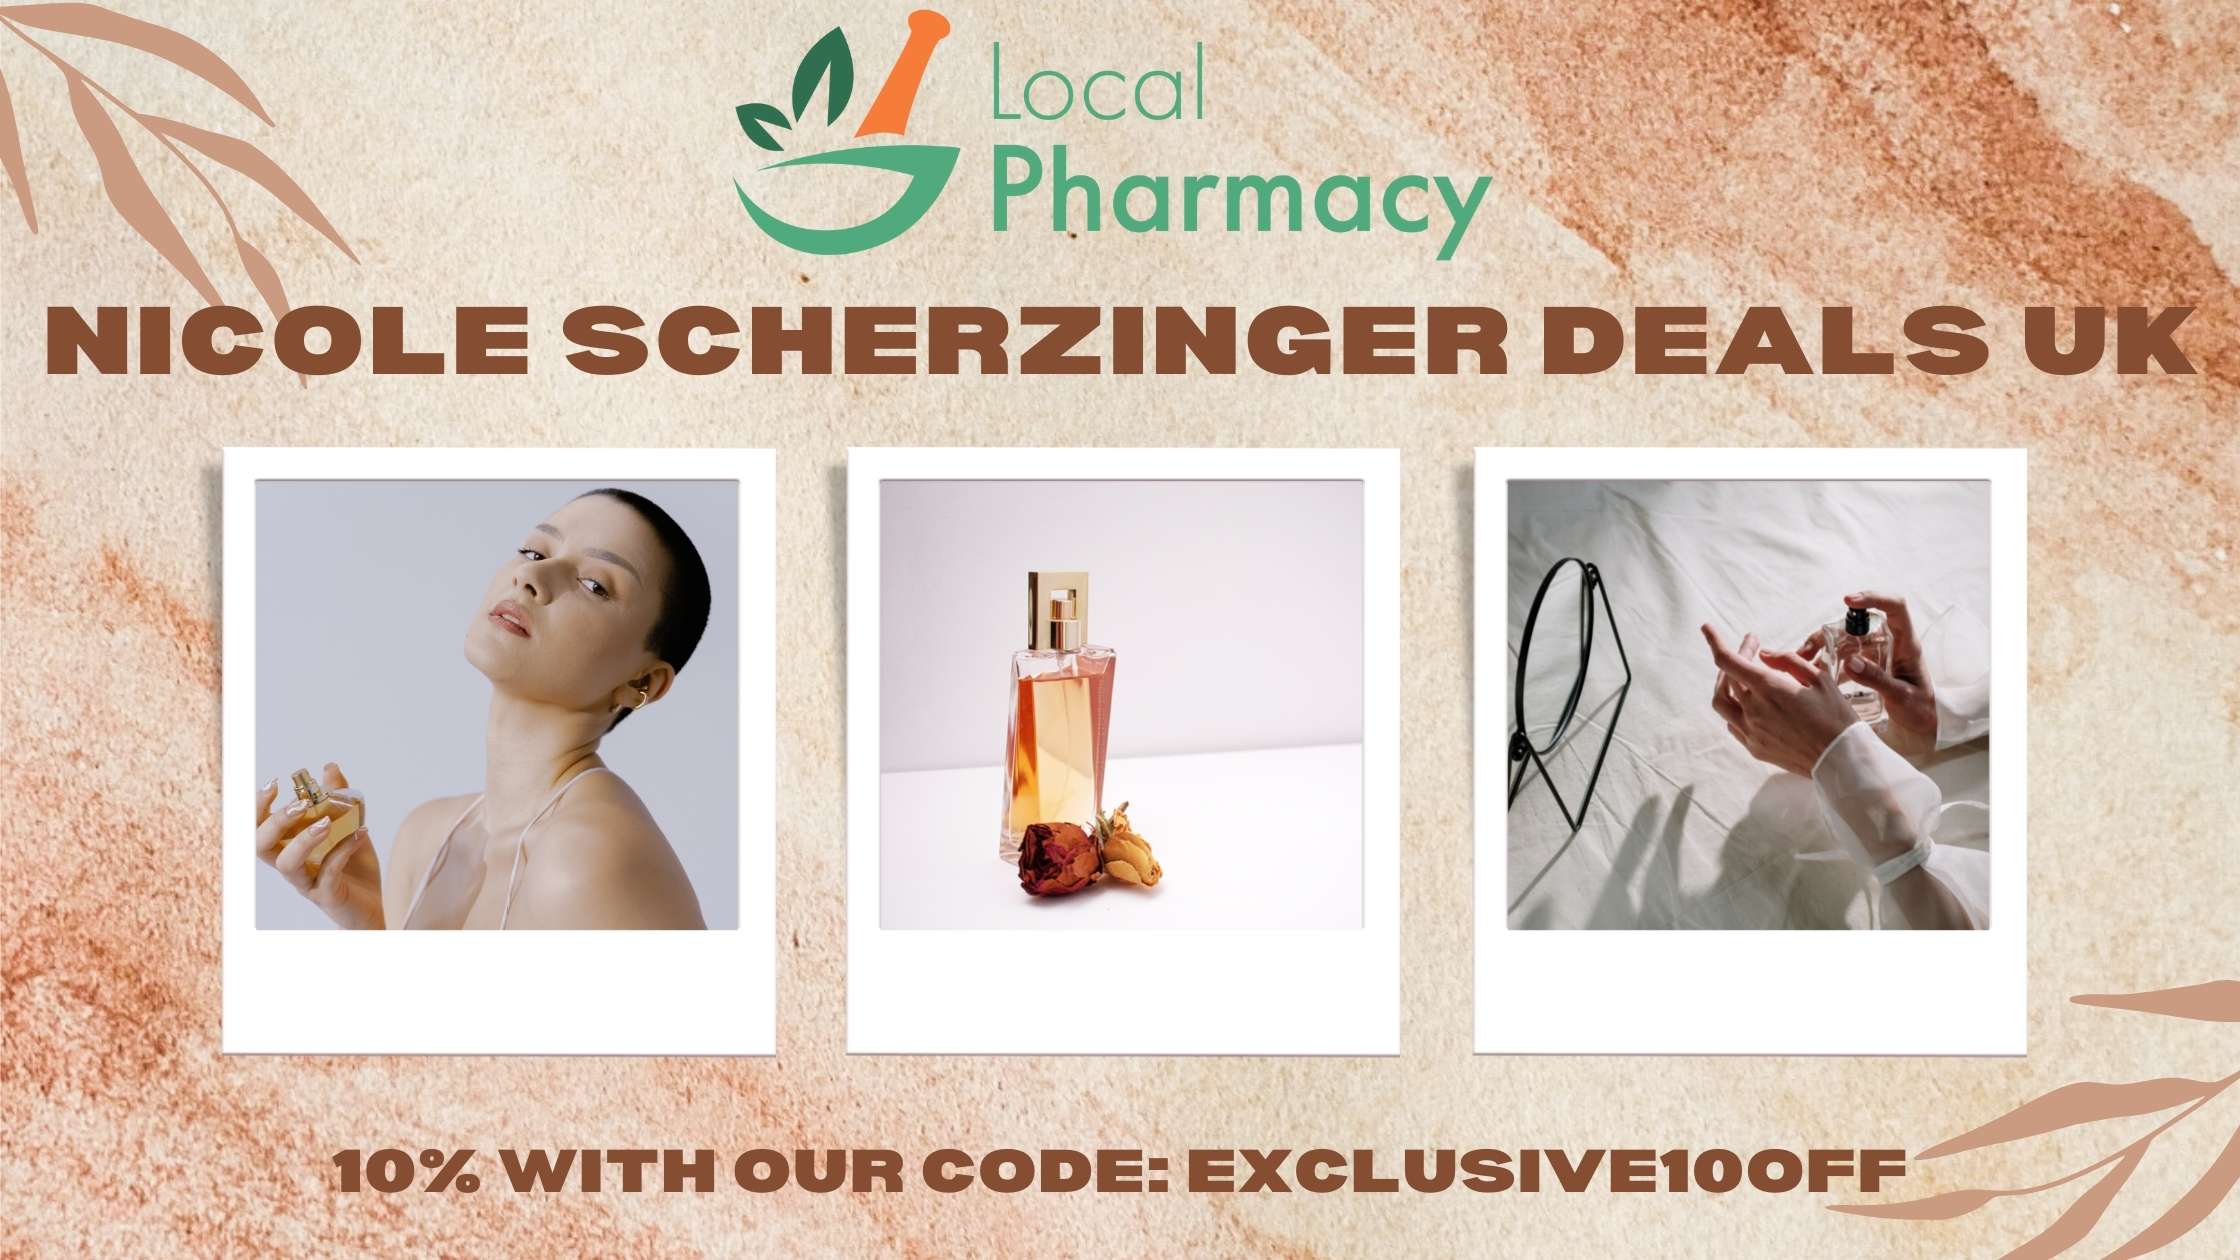 Nicole Scherzinger coupon code and deals uk